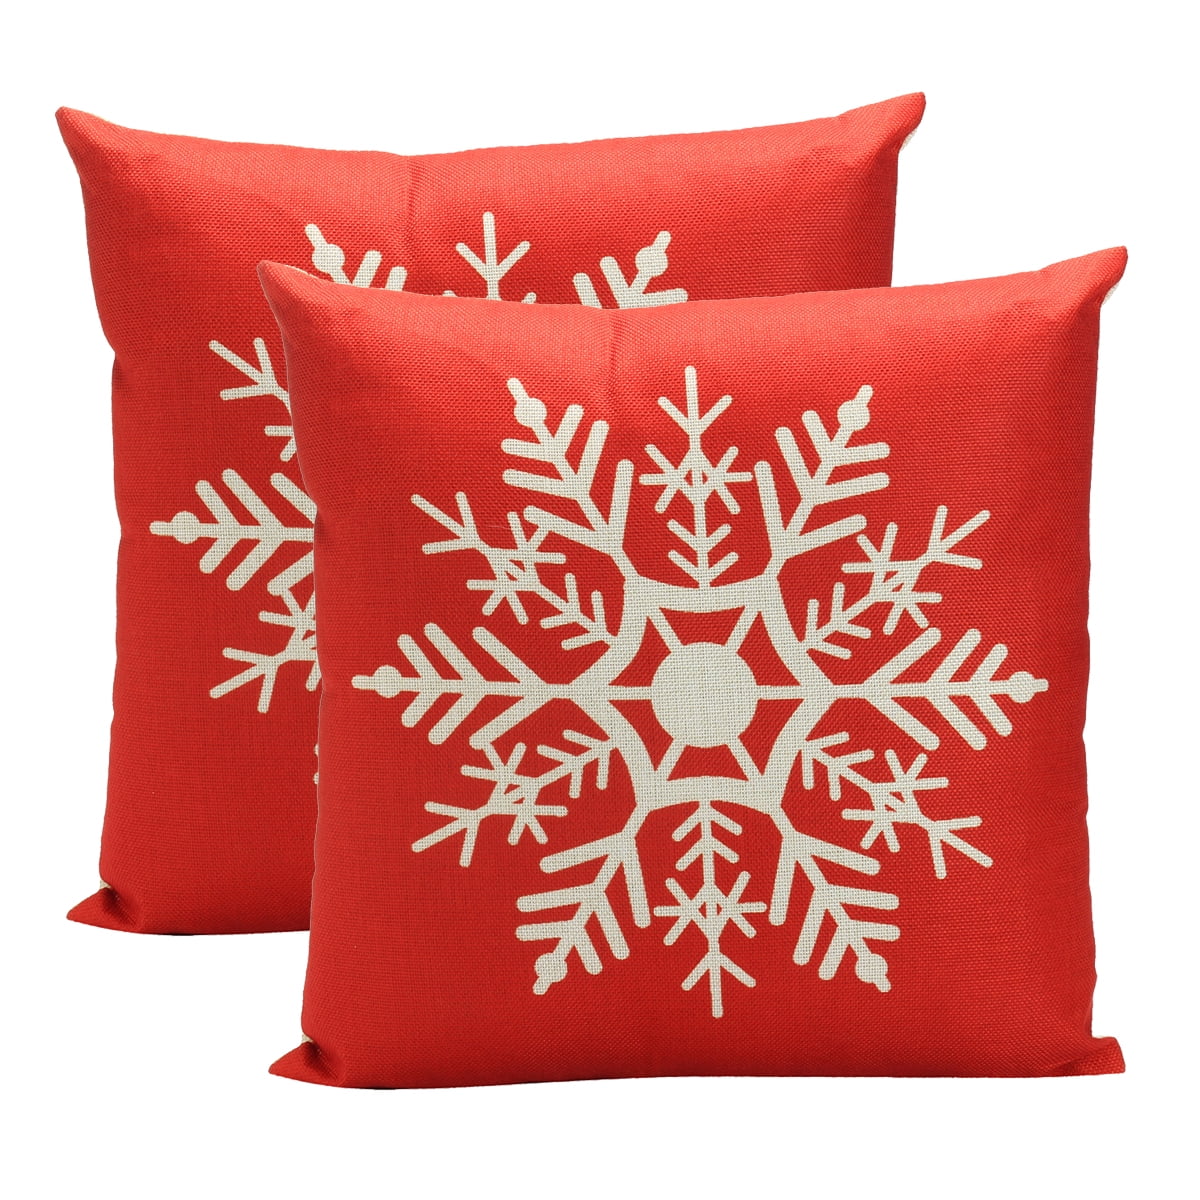 18" Merry Christmas Pillow Case Car Cotton Linen Home Décor Sofa Cushion Cover 